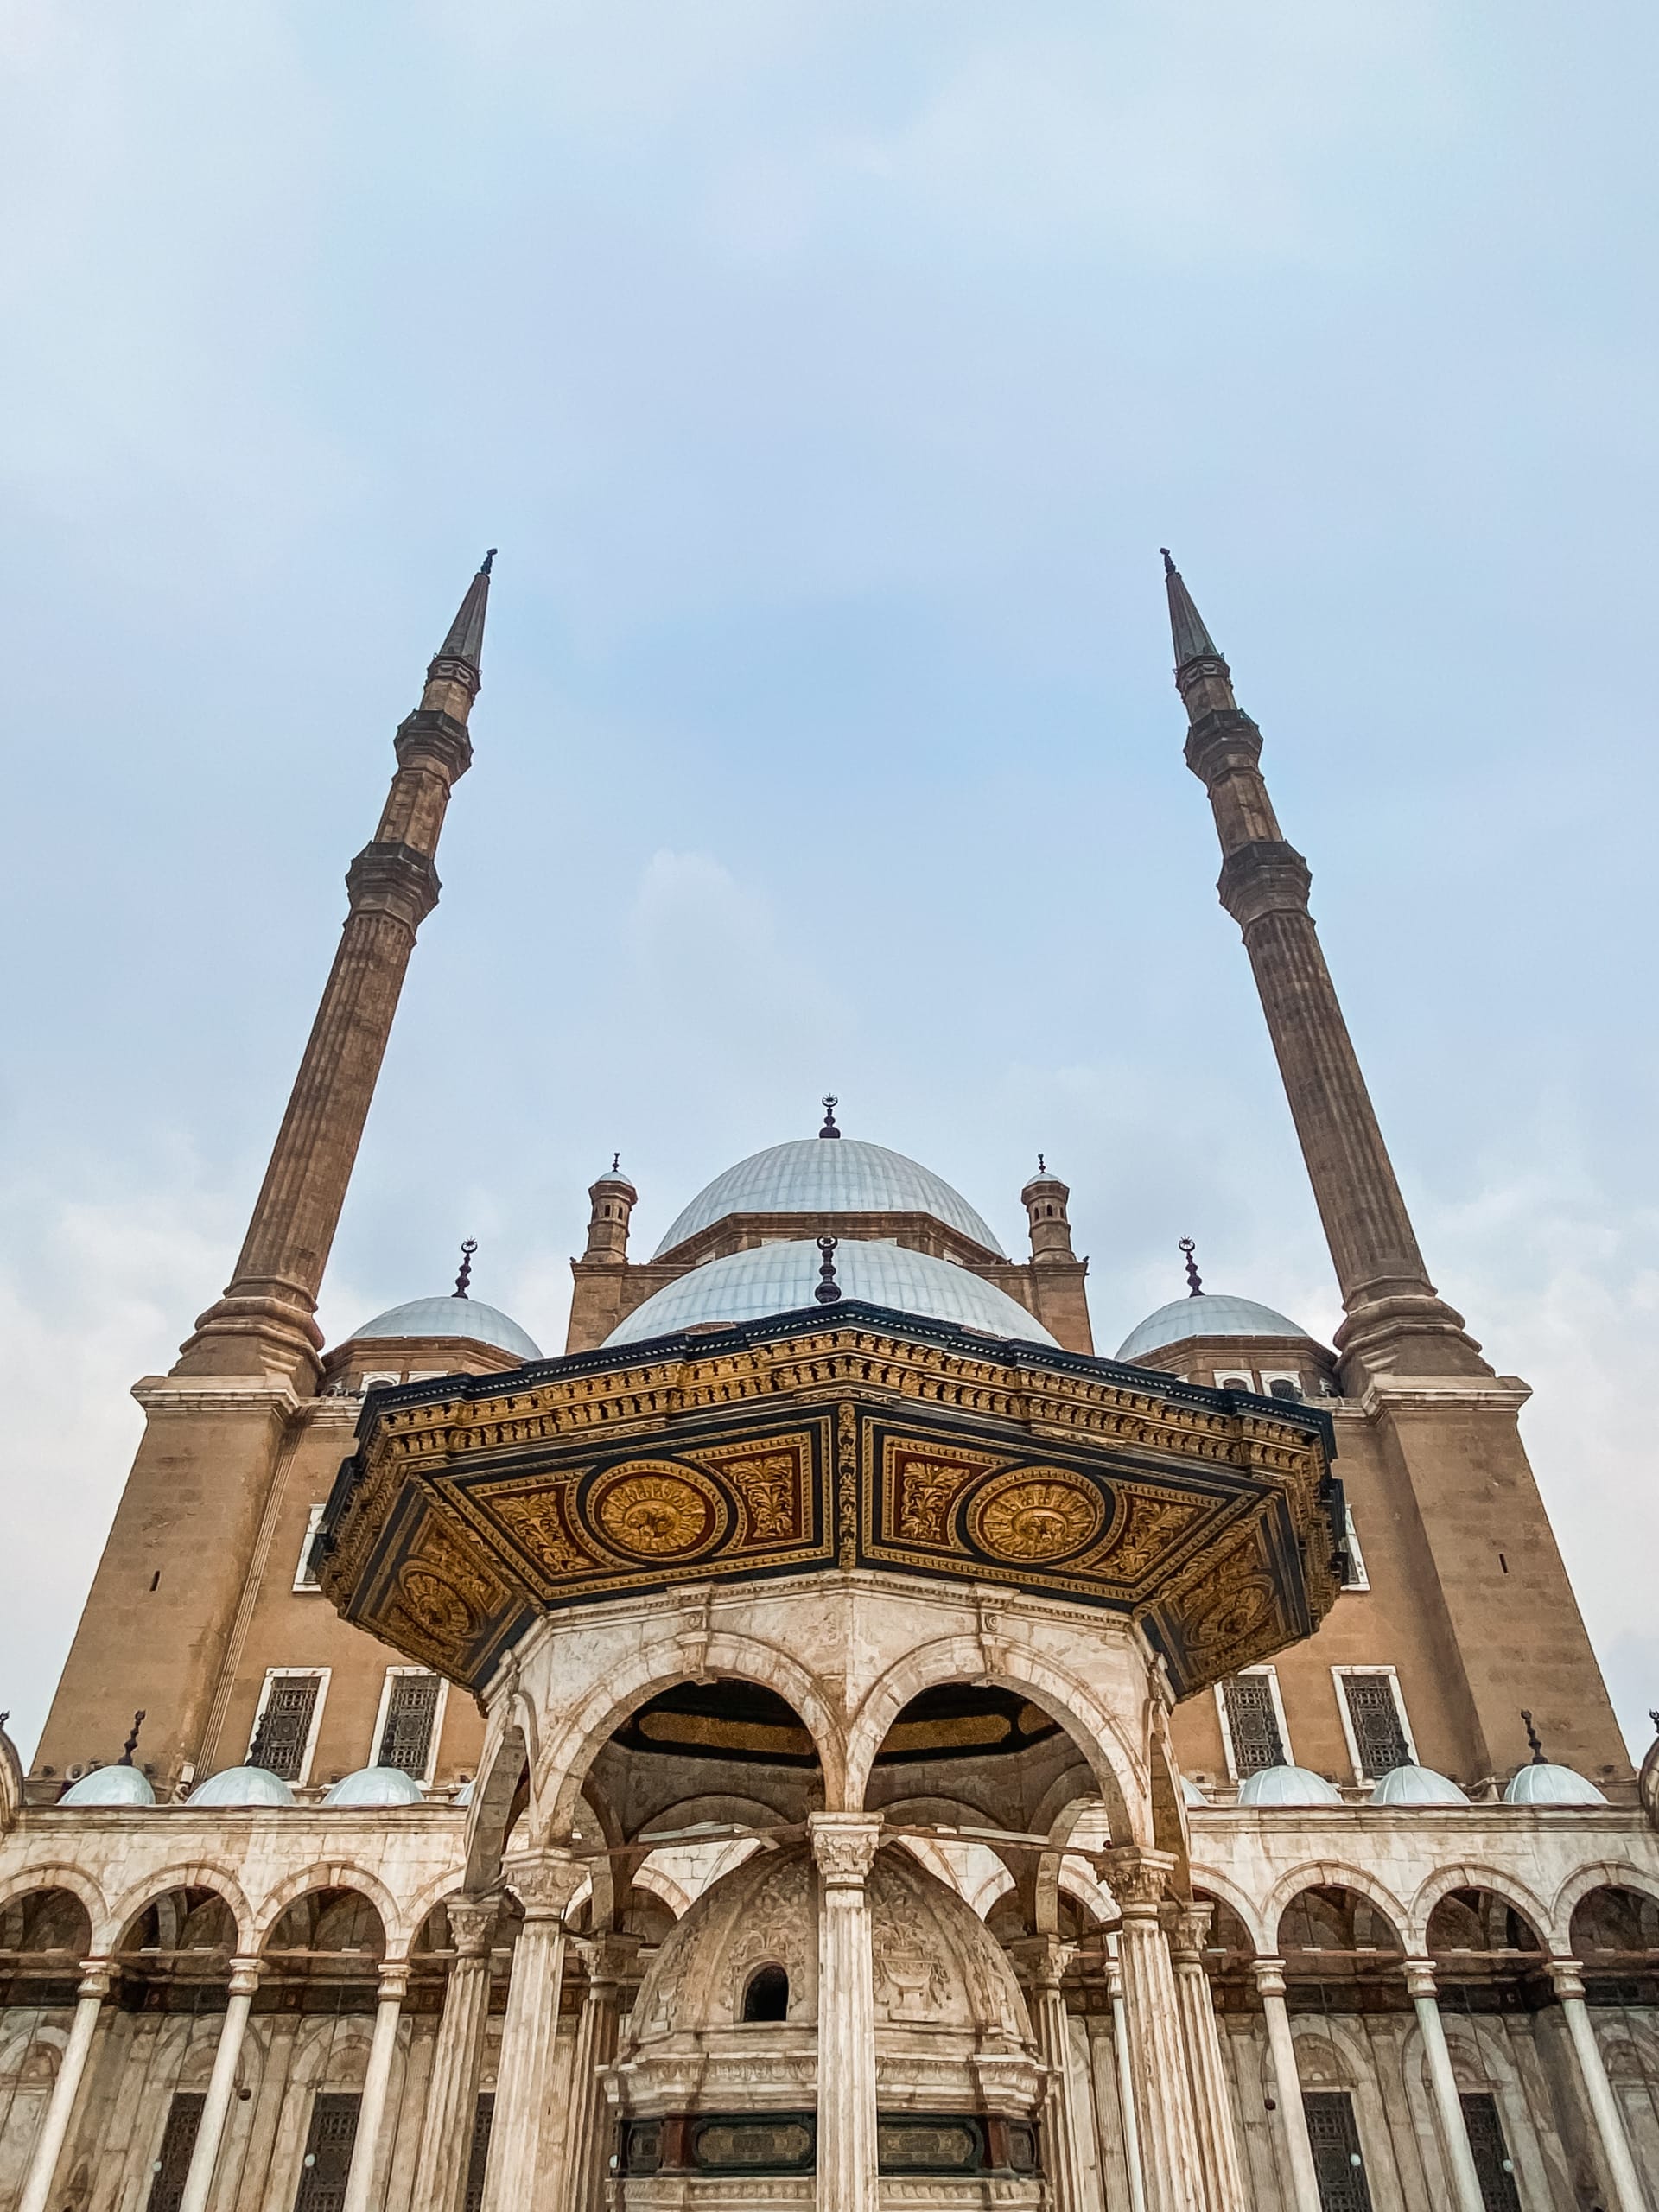 بمئذنتان هما الأعلى بمصر.. تعرف إلى جامع محمد علي بـ"مدينة الألف مئذنة"